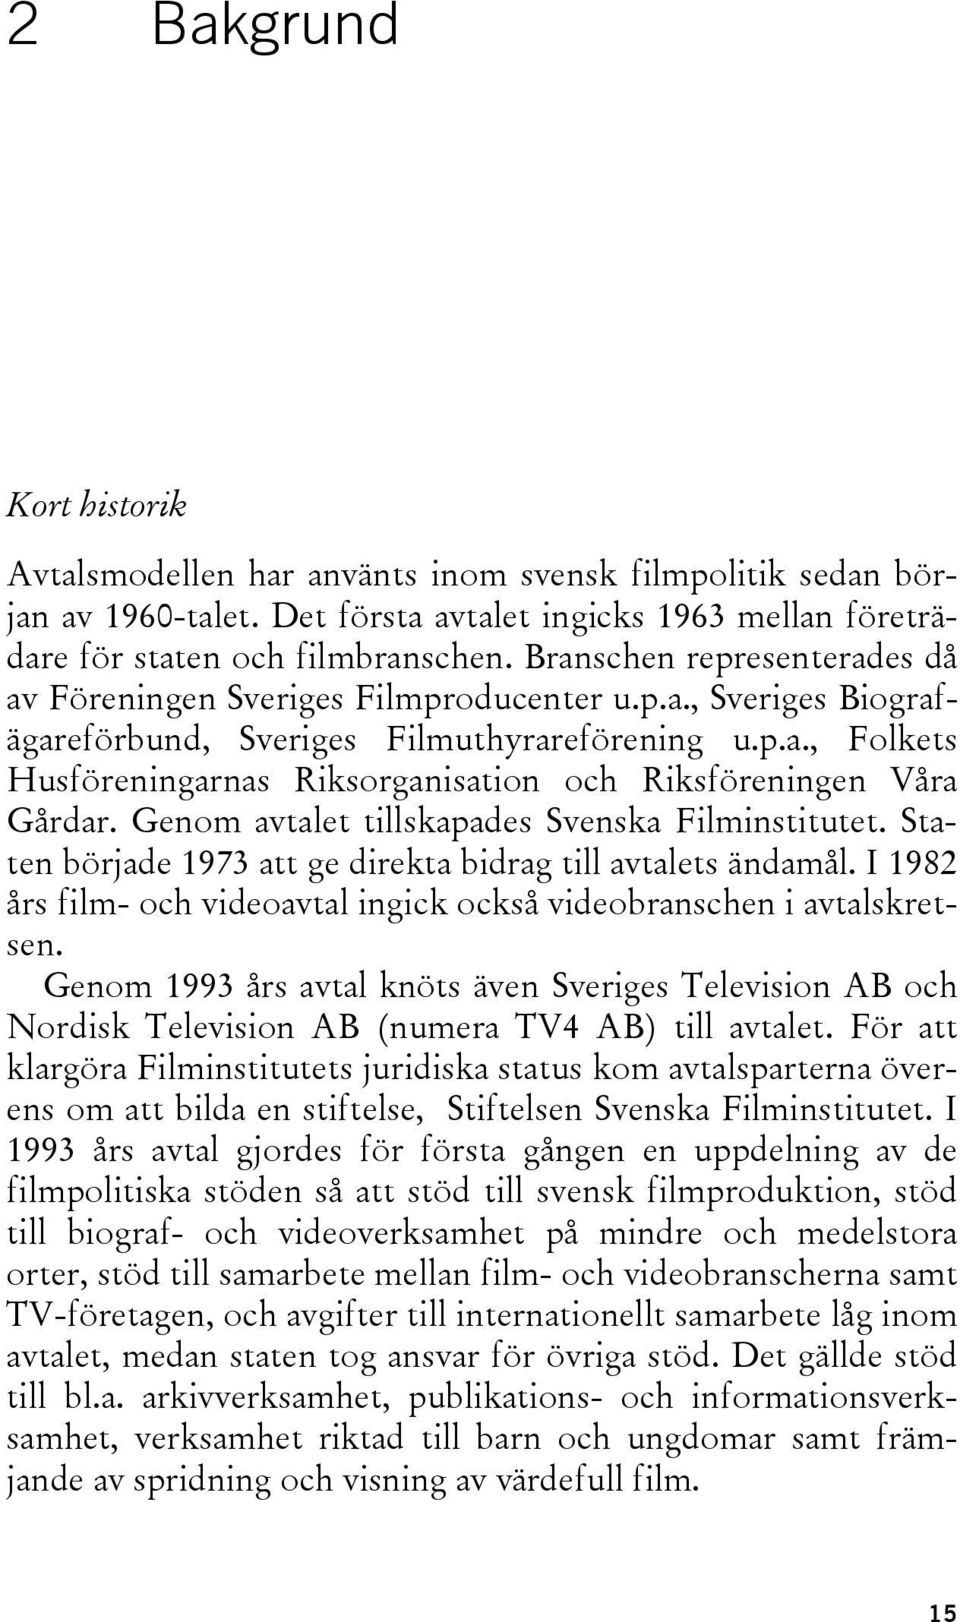 Genom avtalet tillskapades Svenska Filminstitutet. Staten började 1973 att ge direkta bidrag till avtalets ändamål. I 1982 års film- och videoavtal ingick också videobranschen i avtalskretsen.